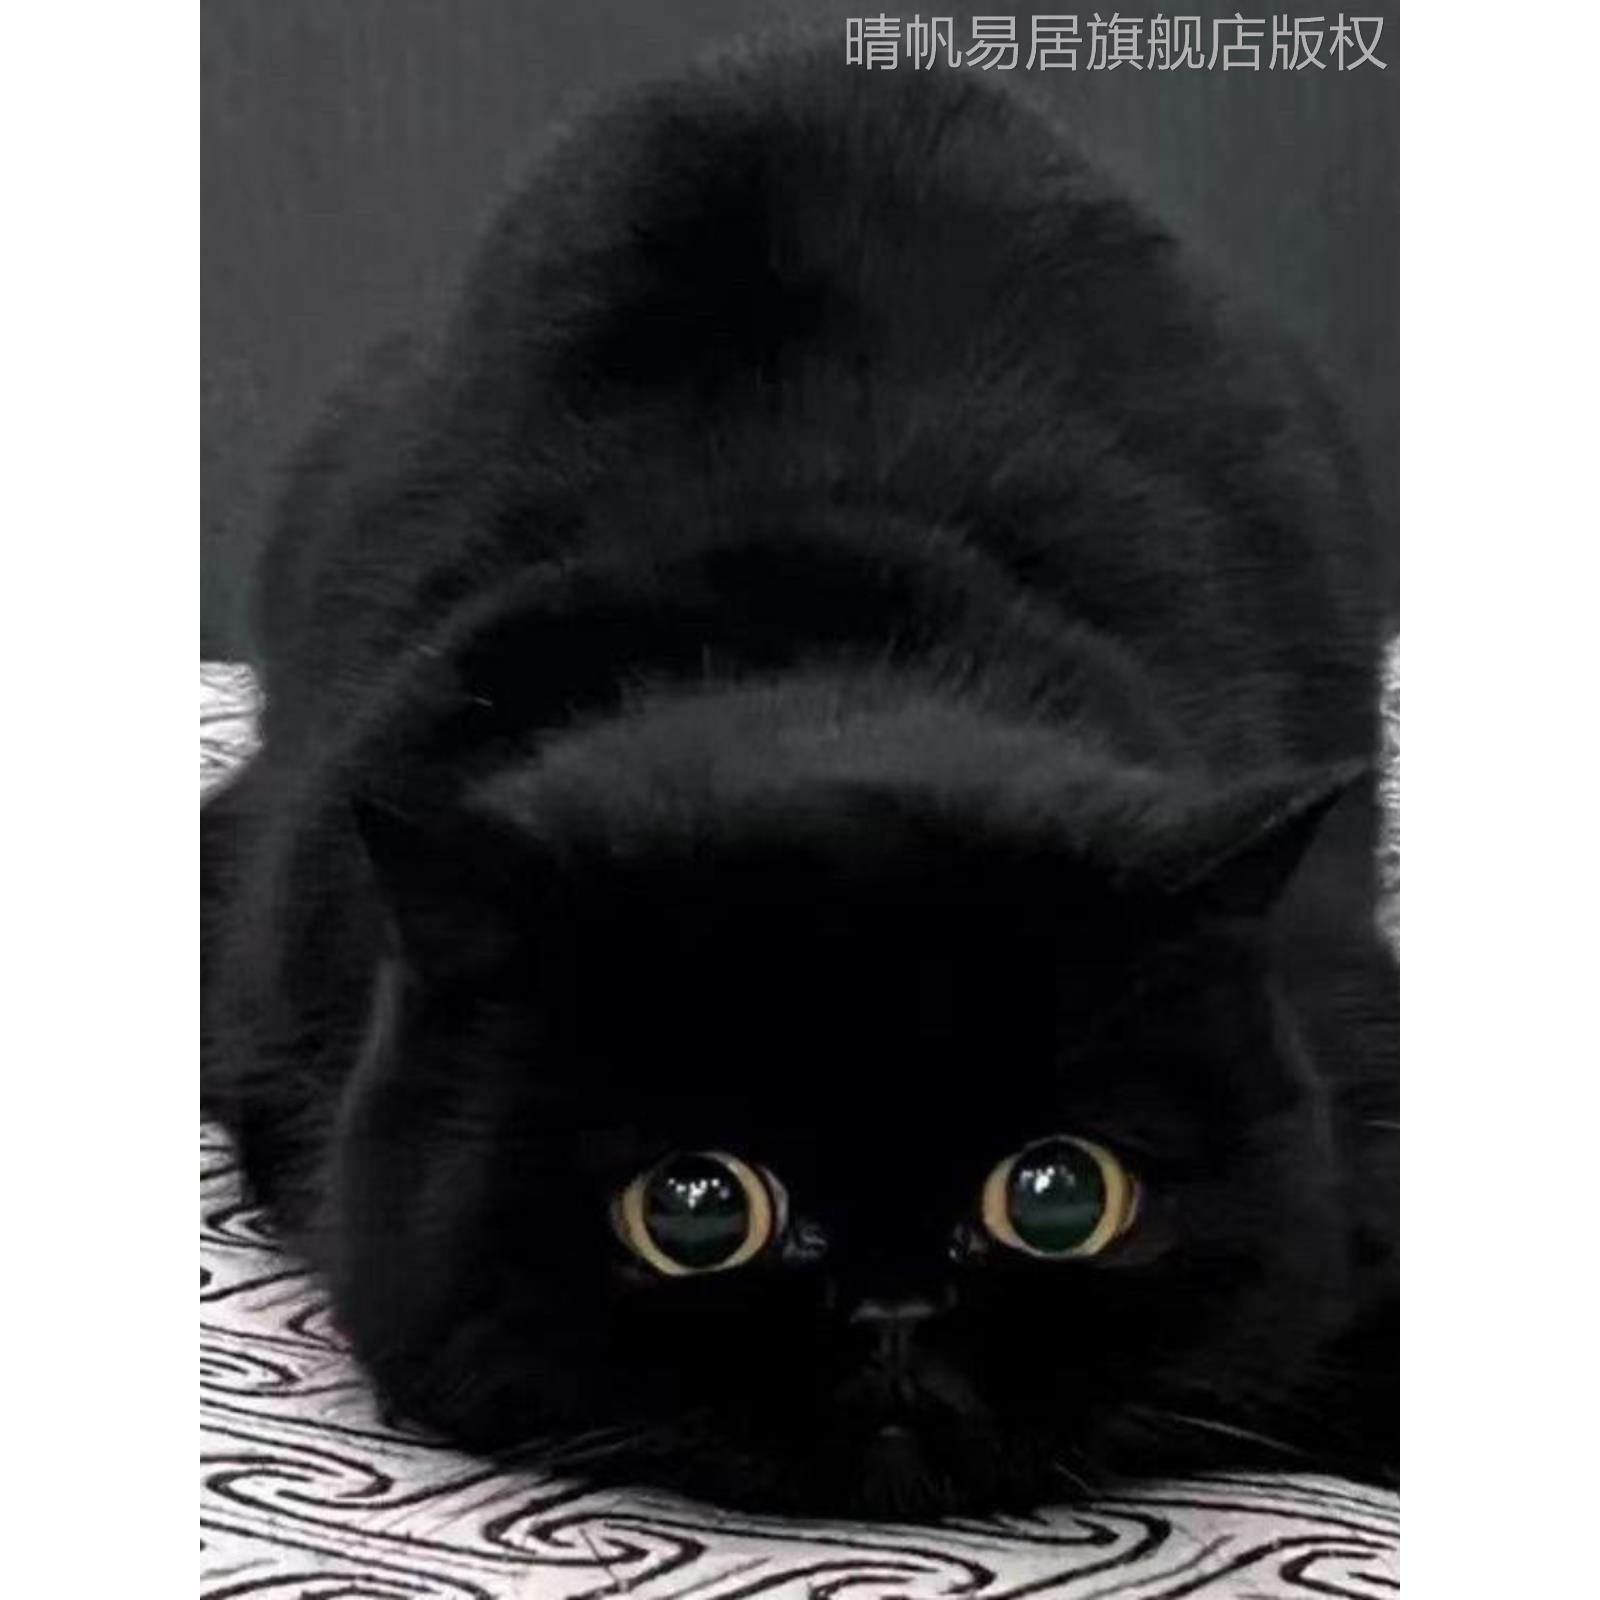 玄猫纯黑猫咪家养小猫咪活物黑色纯黑无杂毛大猫活物短毛可爱黑猫-图3